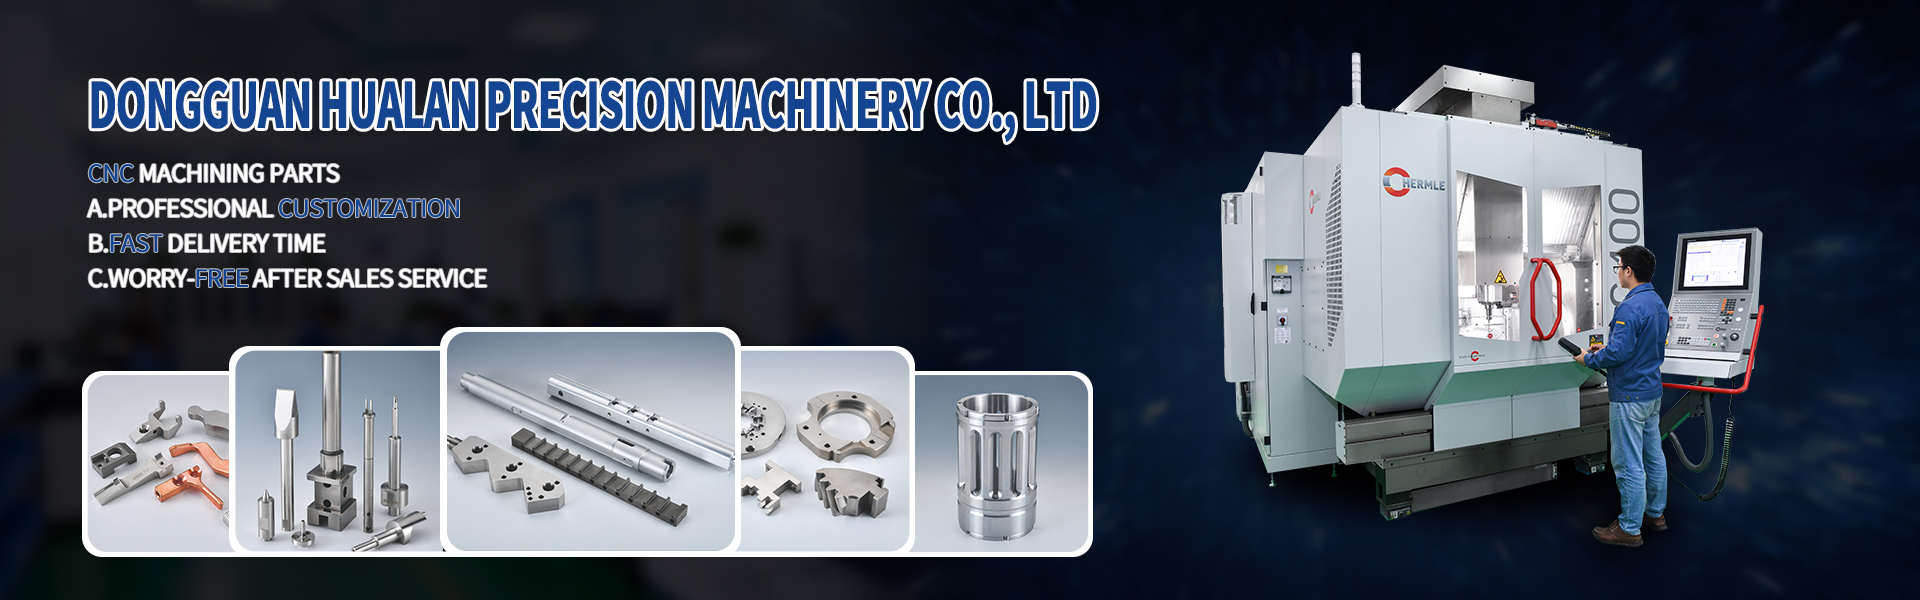 Части обработки ЧПУ, Тьюринг и фрезерование, вырезание линии,Dongguan Hualan Precision Machinery Co., LTD